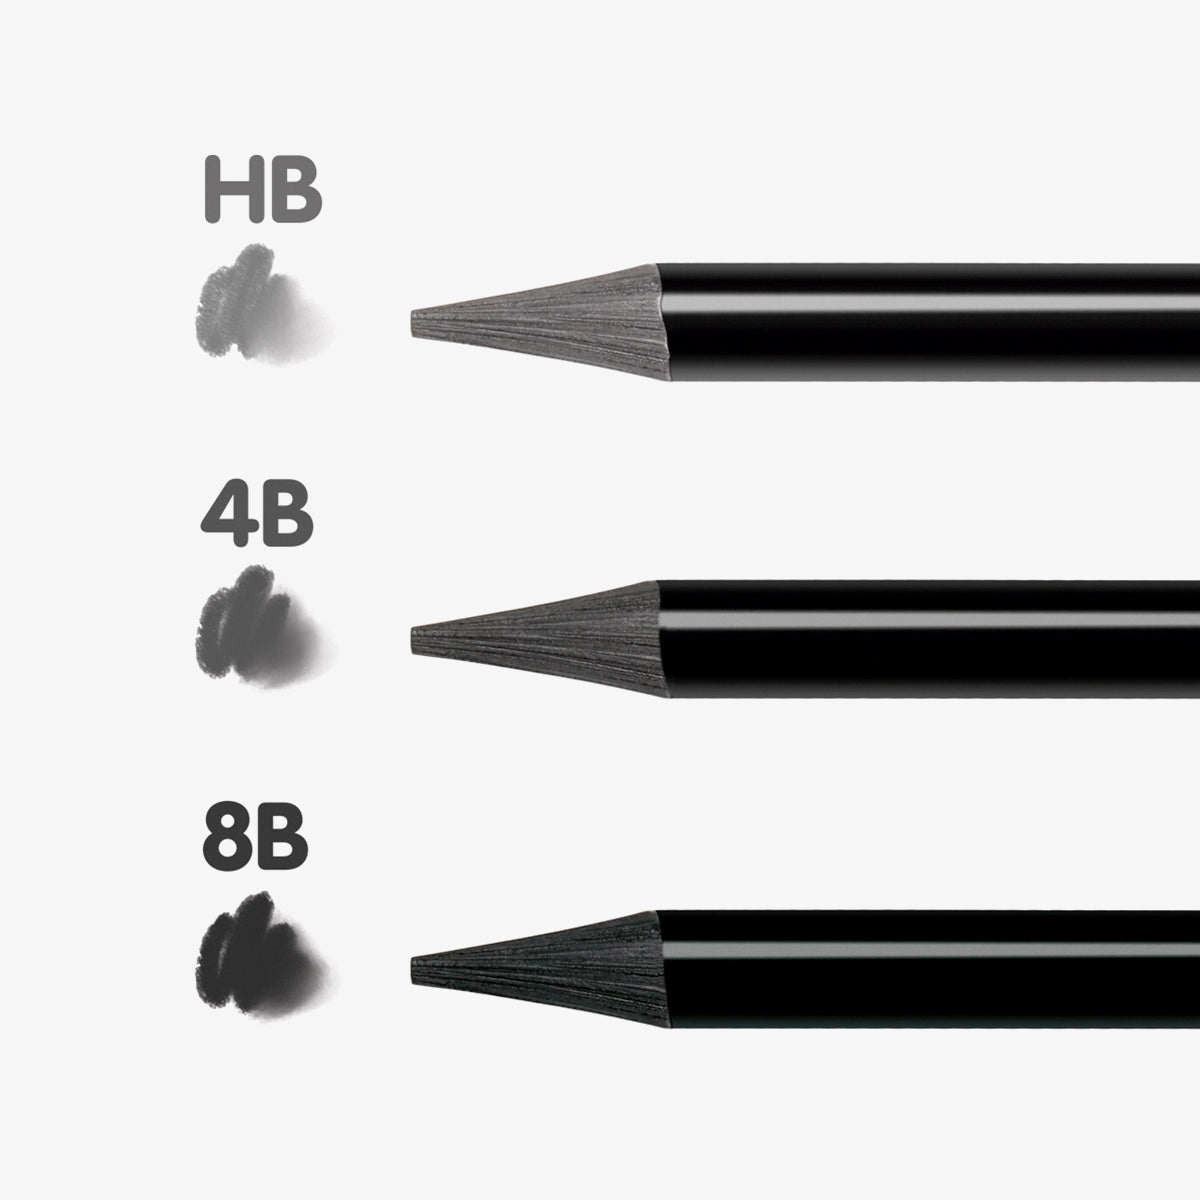 3 llapis de grafit aquarel·lable tot mina (HB, 4B i 8B) + goma The Master Gum + maquineta + pinzell, en capsa metàl·lica